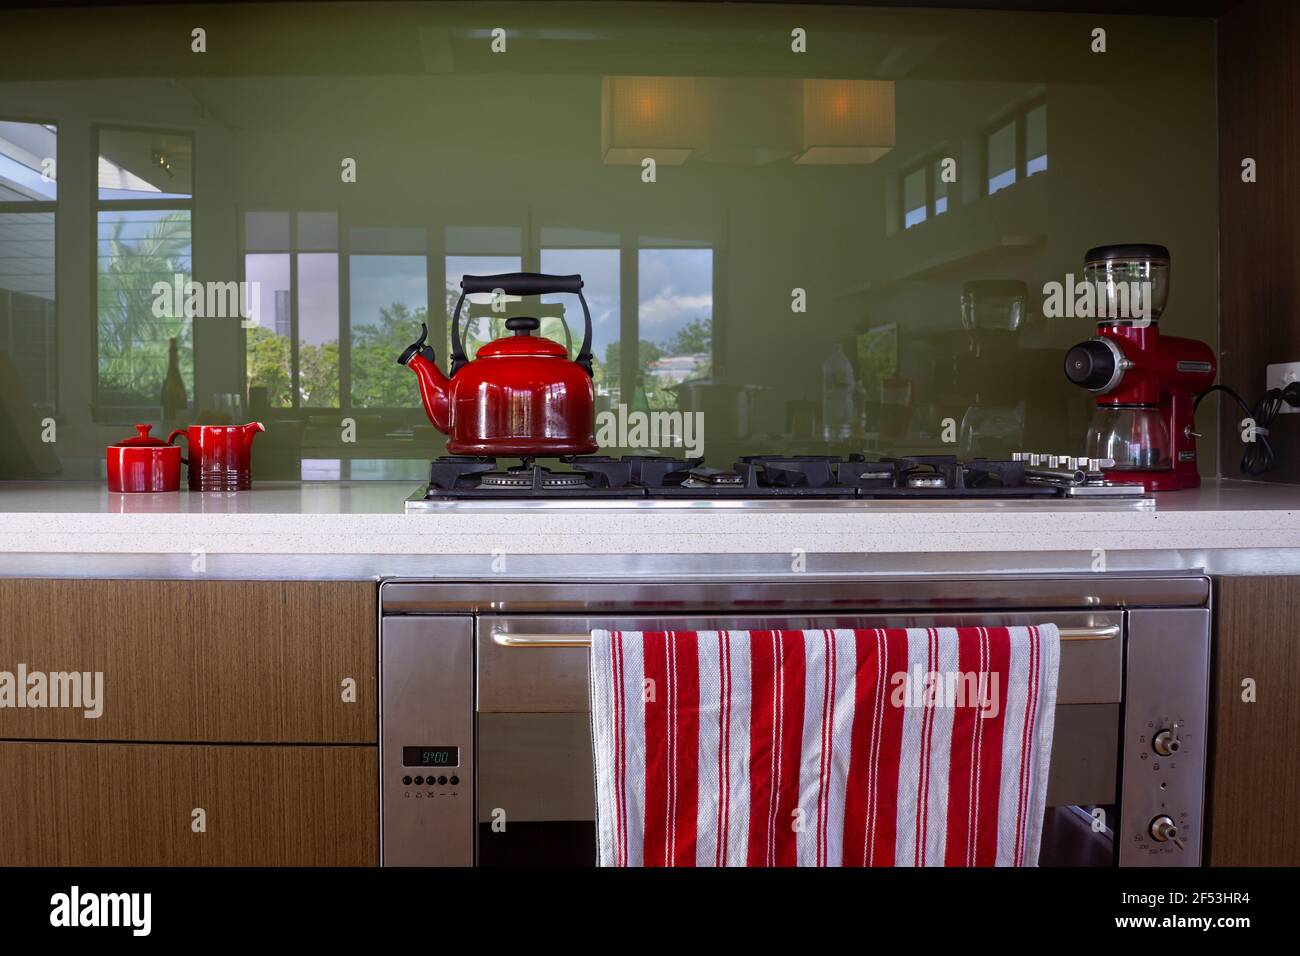 Appareils rouges comprenant une bouilloire, un moulin à café, un bol à sucre et un crémier sur un banc de cuisine avec un dessus de cuisson au gaz et une théière à rayures rouges et blanches Banque D'Images